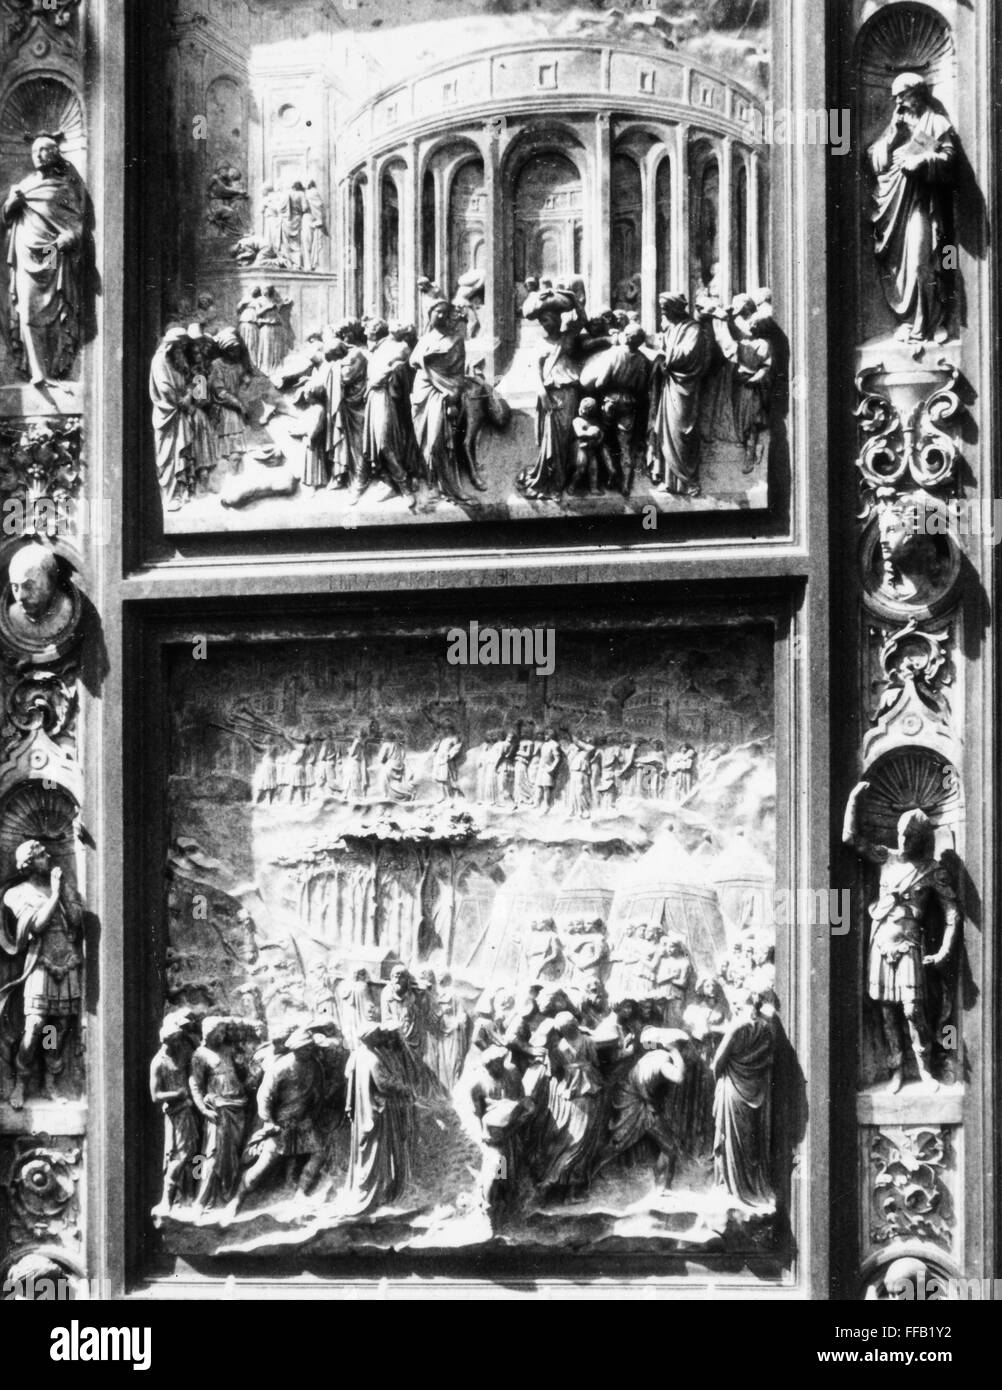 GHIBERTI: i cancelli del paradiso. /NDetail dei pannelli di bronzo del "Porte del Paradiso" da Lorenzo Ghiberti del Battistero di San Giovanni, Firenze. Foto Stock